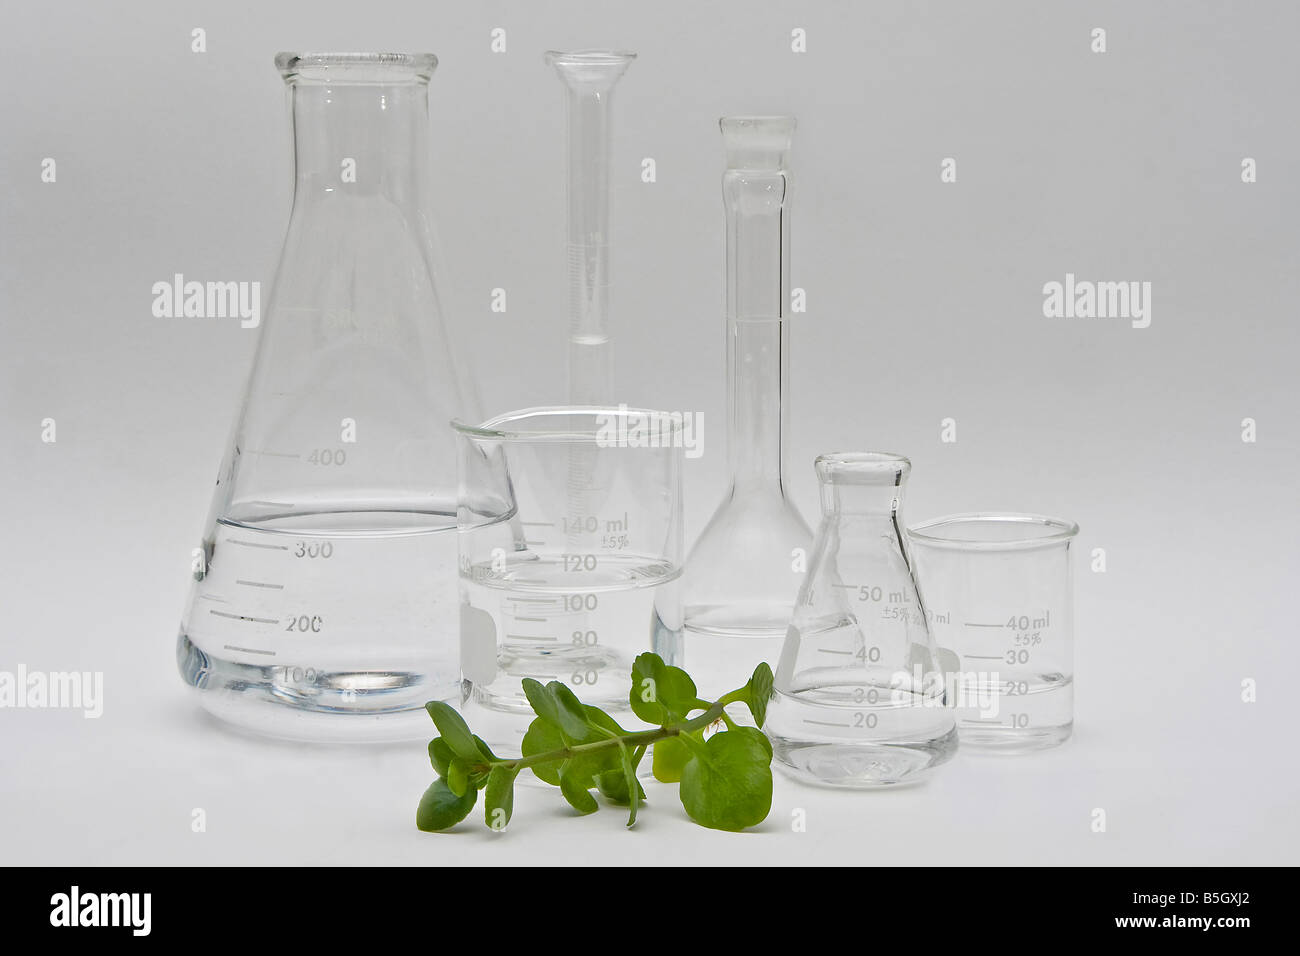 Propre et claire pour la chimie des produits de beauté cosmétiques liquides clairs dans une variété de bouteilles et flacons sur fond blanc Banque D'Images